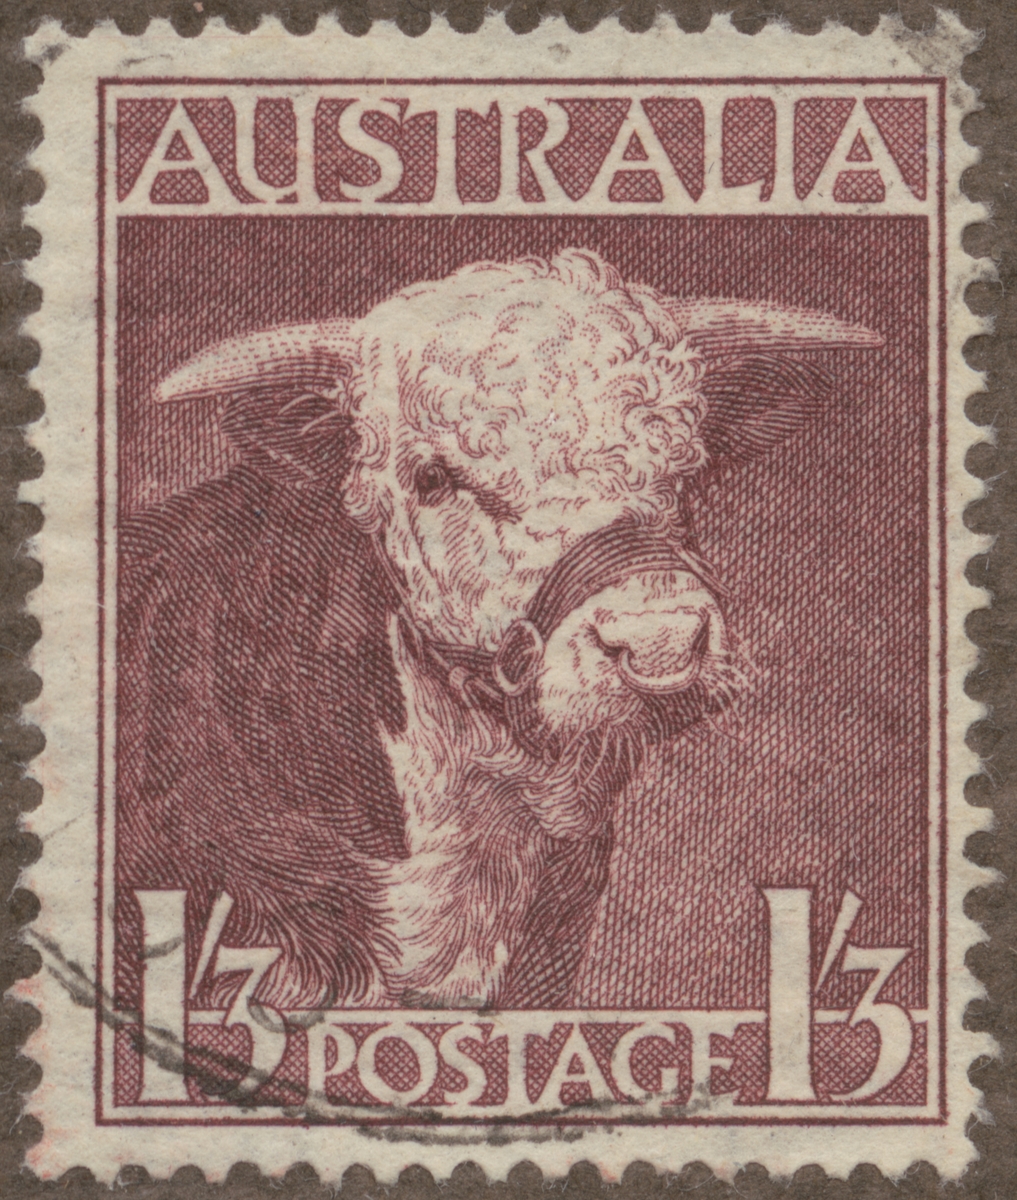 Frimärke ur Gösta Bodmans filatelistiska motivsamling, påbörjad 1950.
Frimärke från Australien, 1948. Motiv av Tjur av Hereford ras